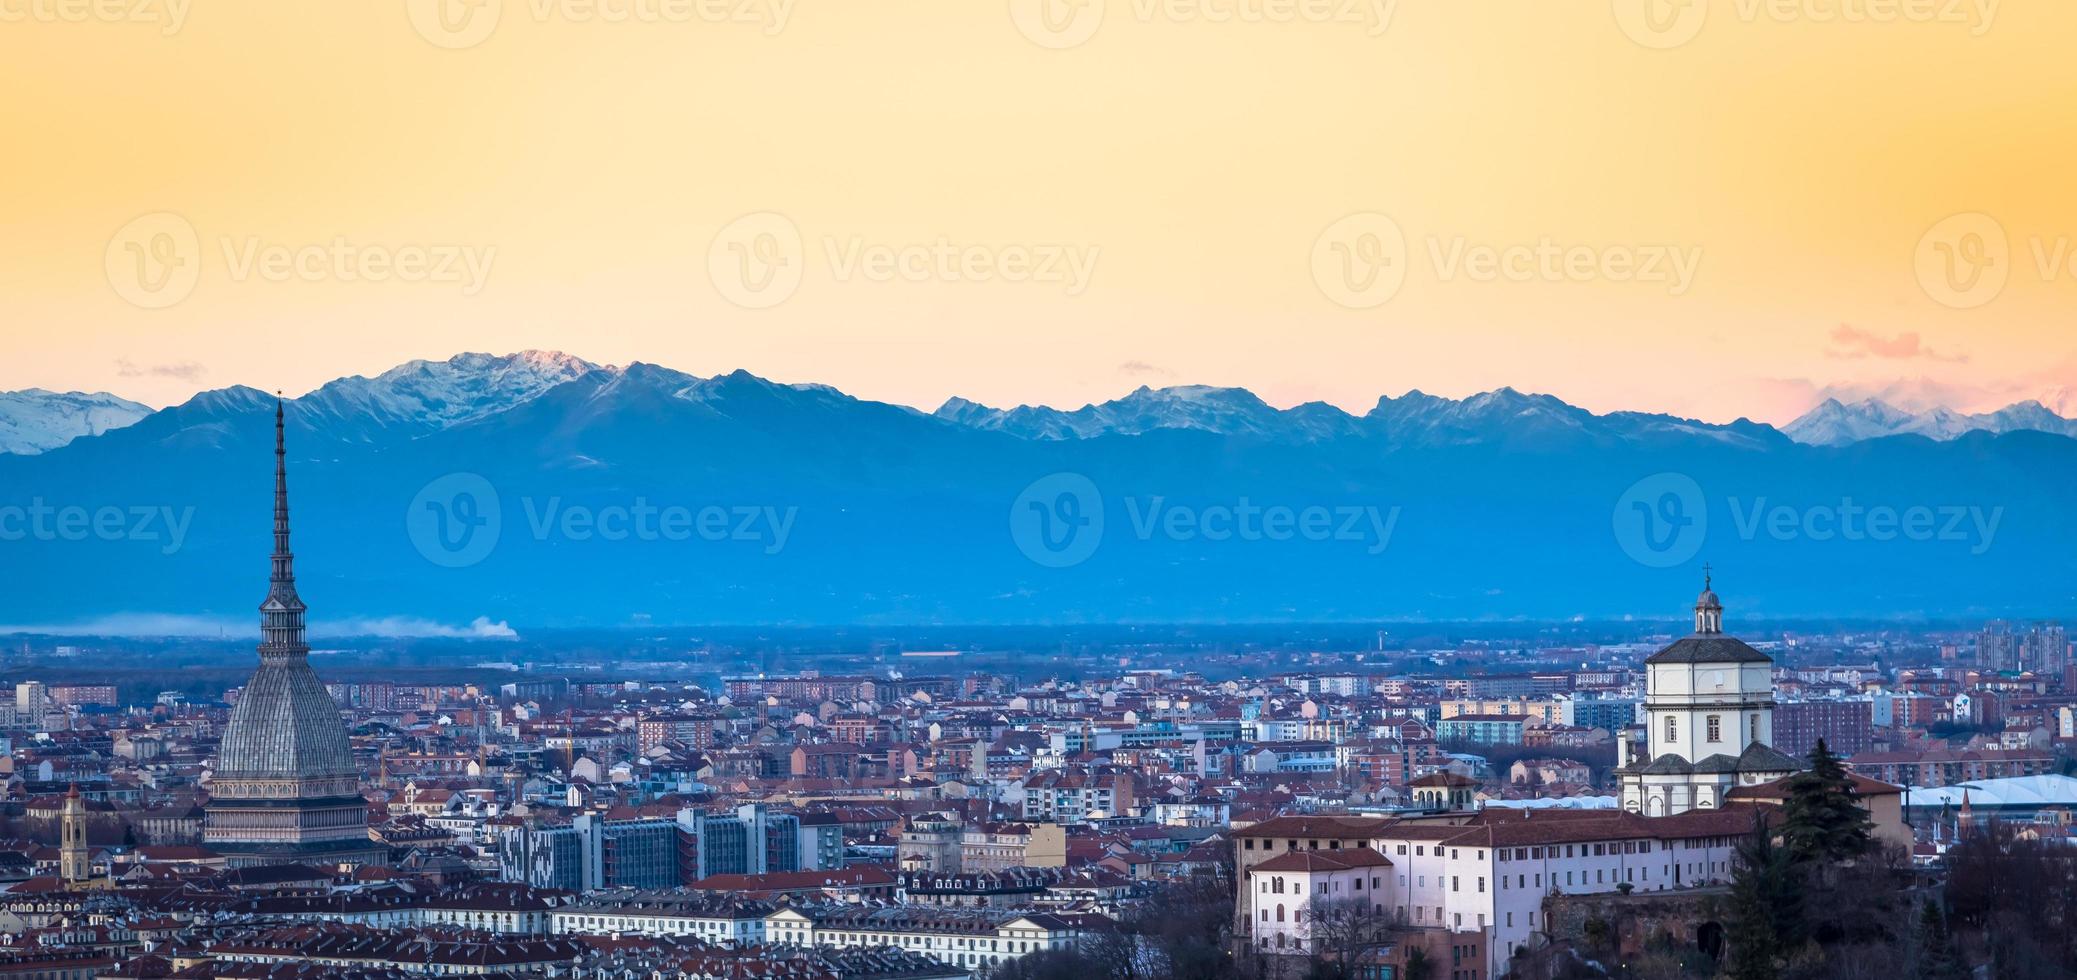 panoramische skyline van turijn bij zonsondergang met alpen op de achtergrond foto